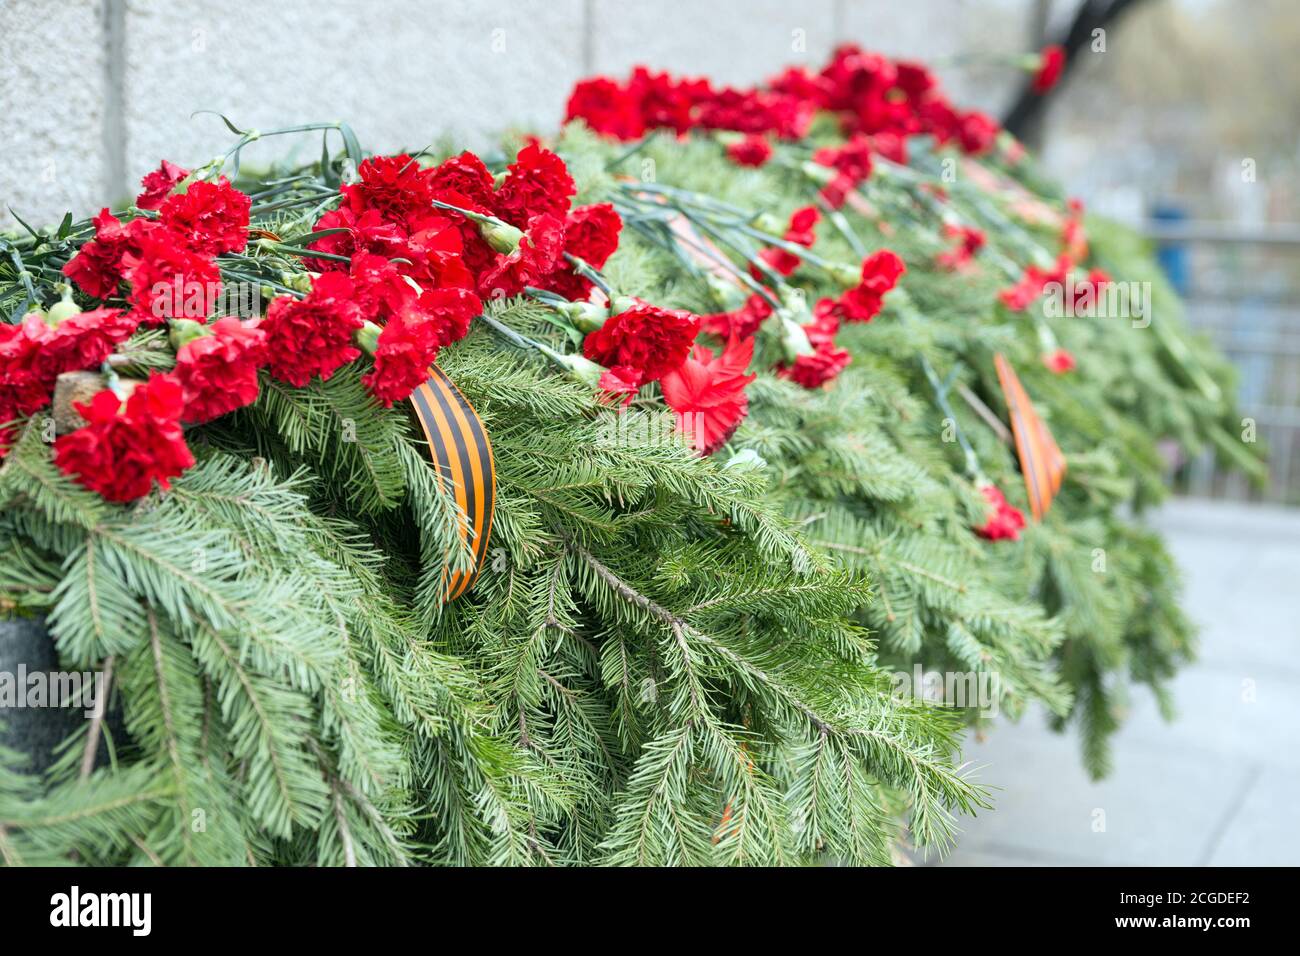 Guirlande funéraire solennelle avec fleurs de l'ornation et ruban de Saint-Georges sur le Mémorial de la victoire lors de la célébration du jour de la victoire Banque D'Images